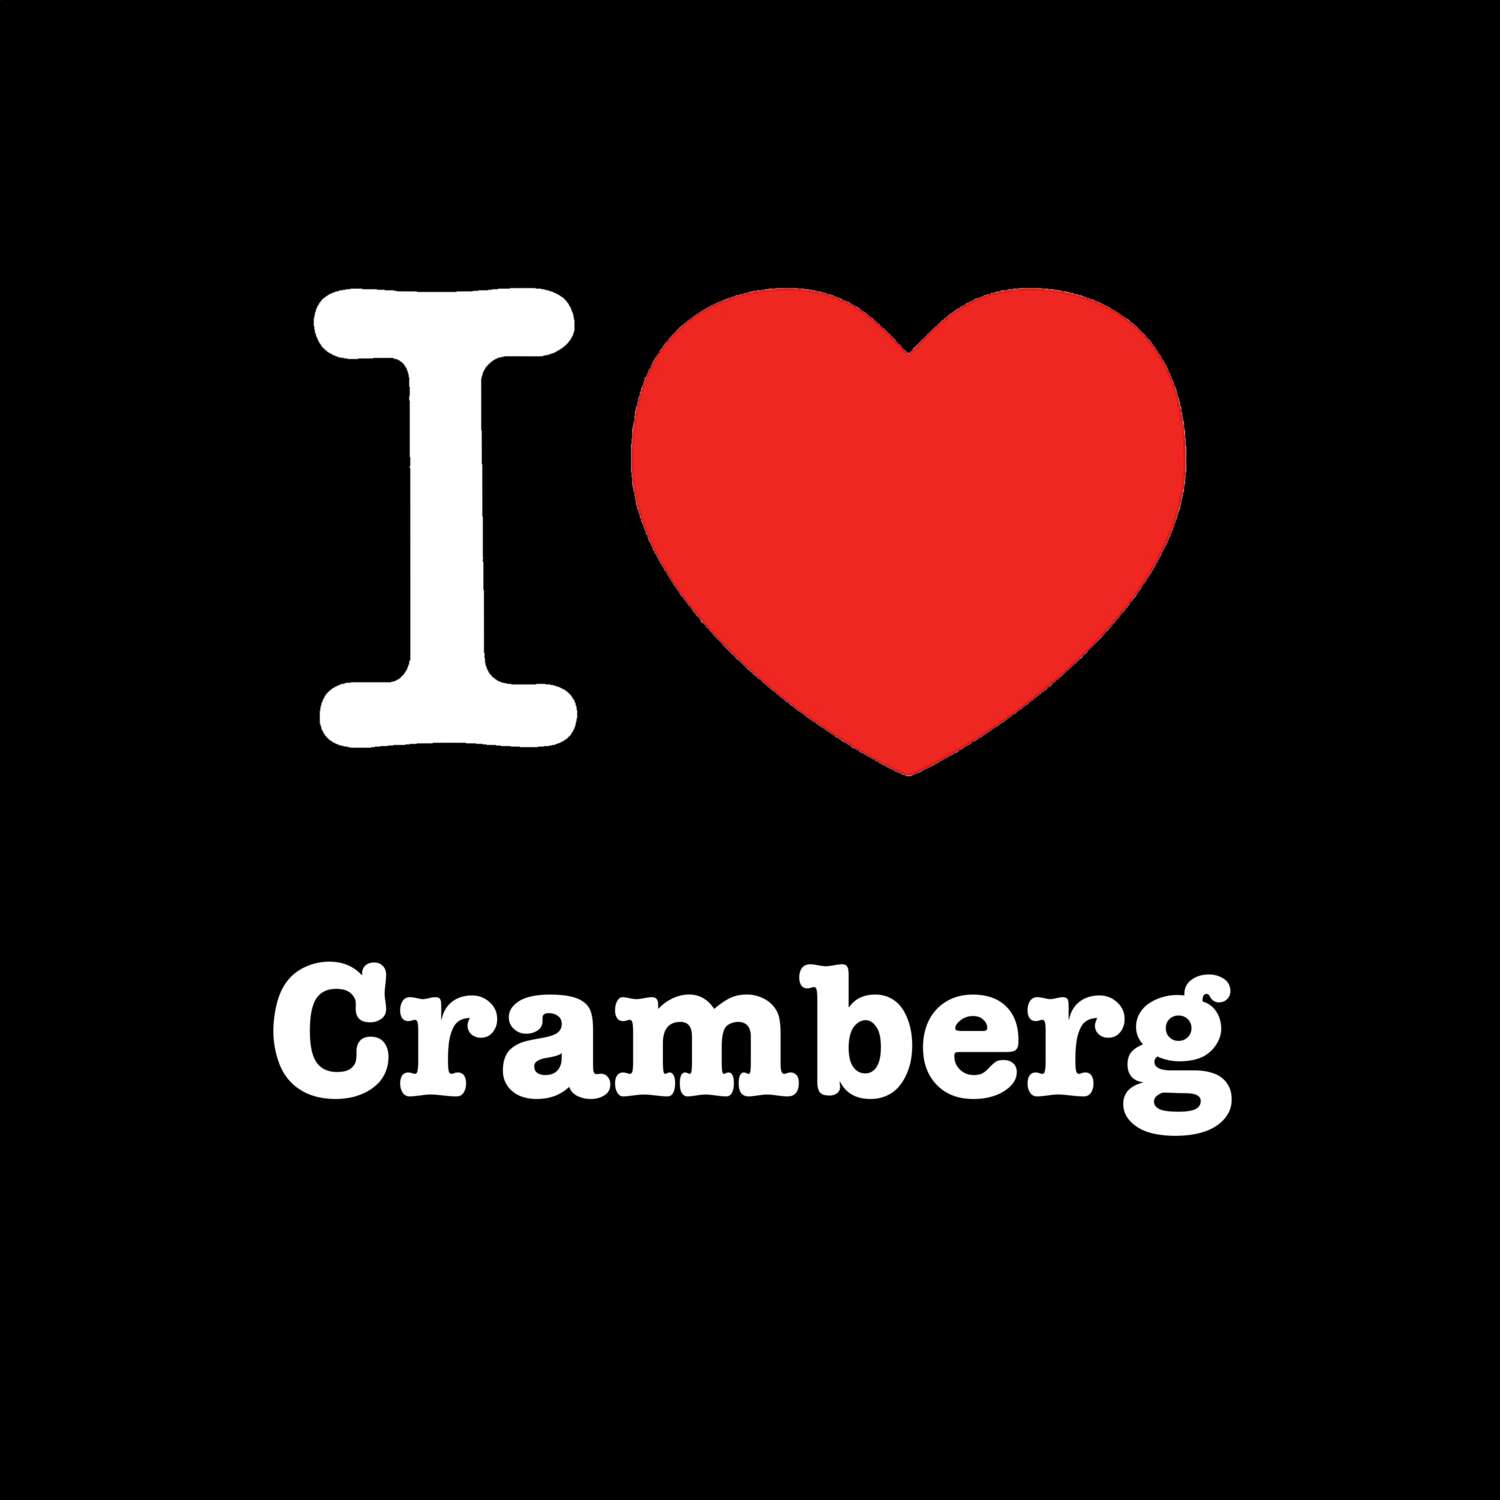 Cramberg T-Shirt »I love«